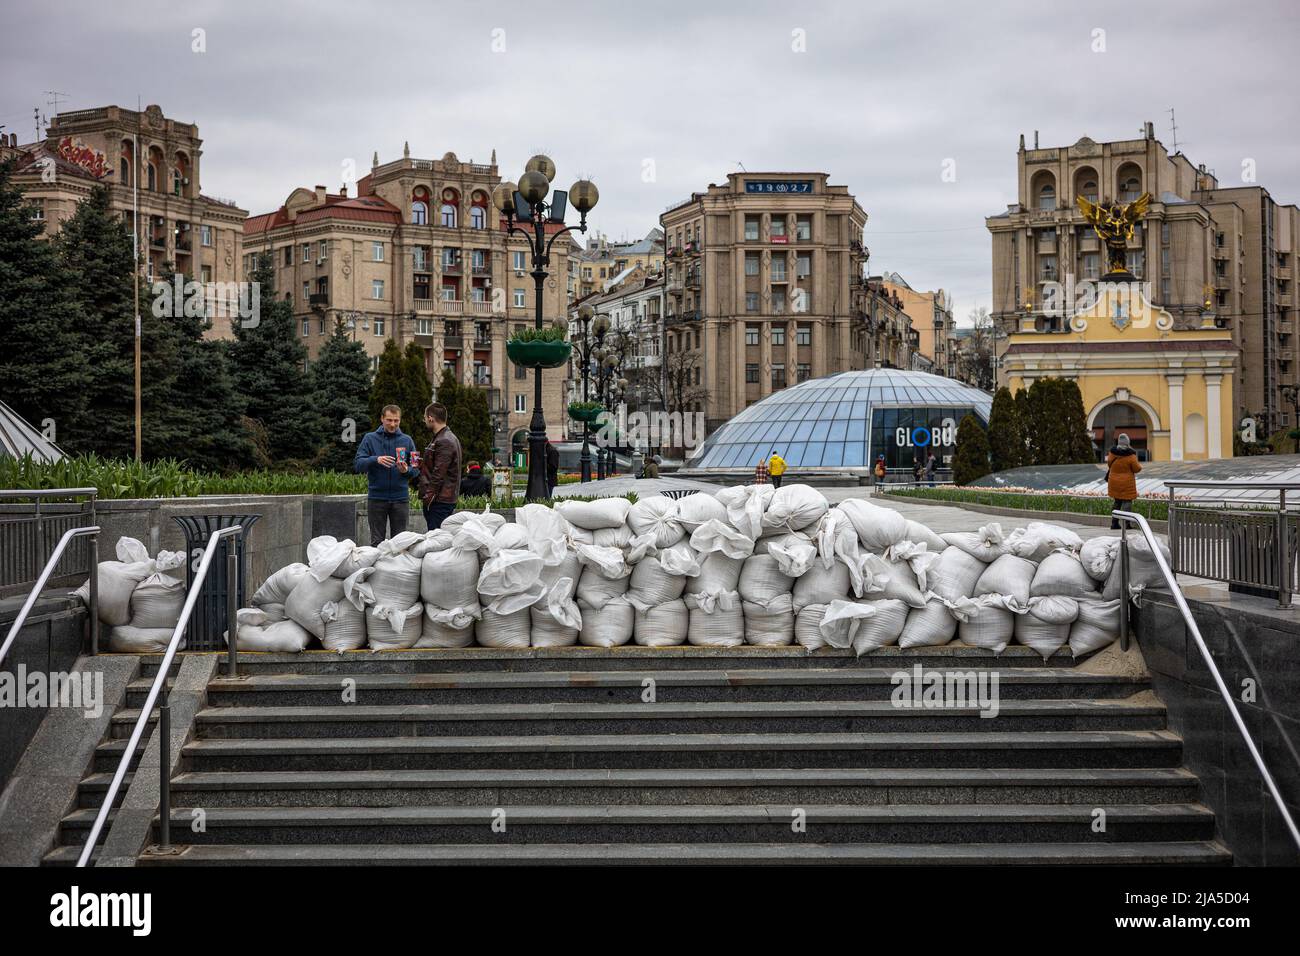 KIEV, UKRAINE - APR 20, 2022: Des barricades de sacs de sable bloquent les passages inférieurs de la place de l'indépendance en cas d'attaque par les troupes russes ennemies. Banque D'Images